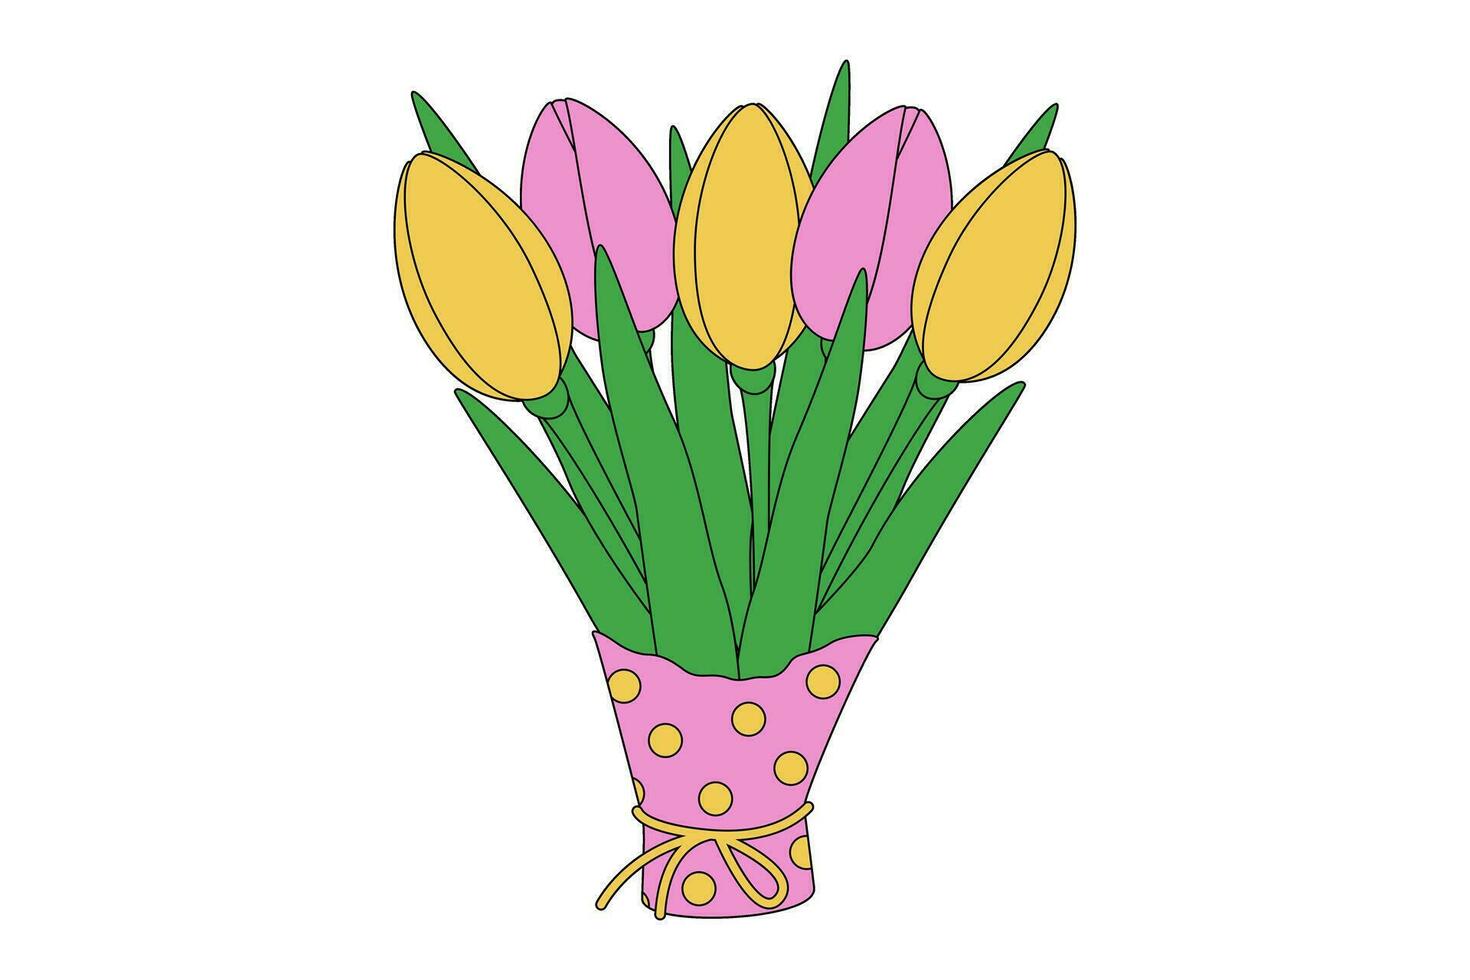 primavera vistoso ramo de flores de tulipanes en envase papel en de moda sombra de suave rosado y amarillo. aislar vector